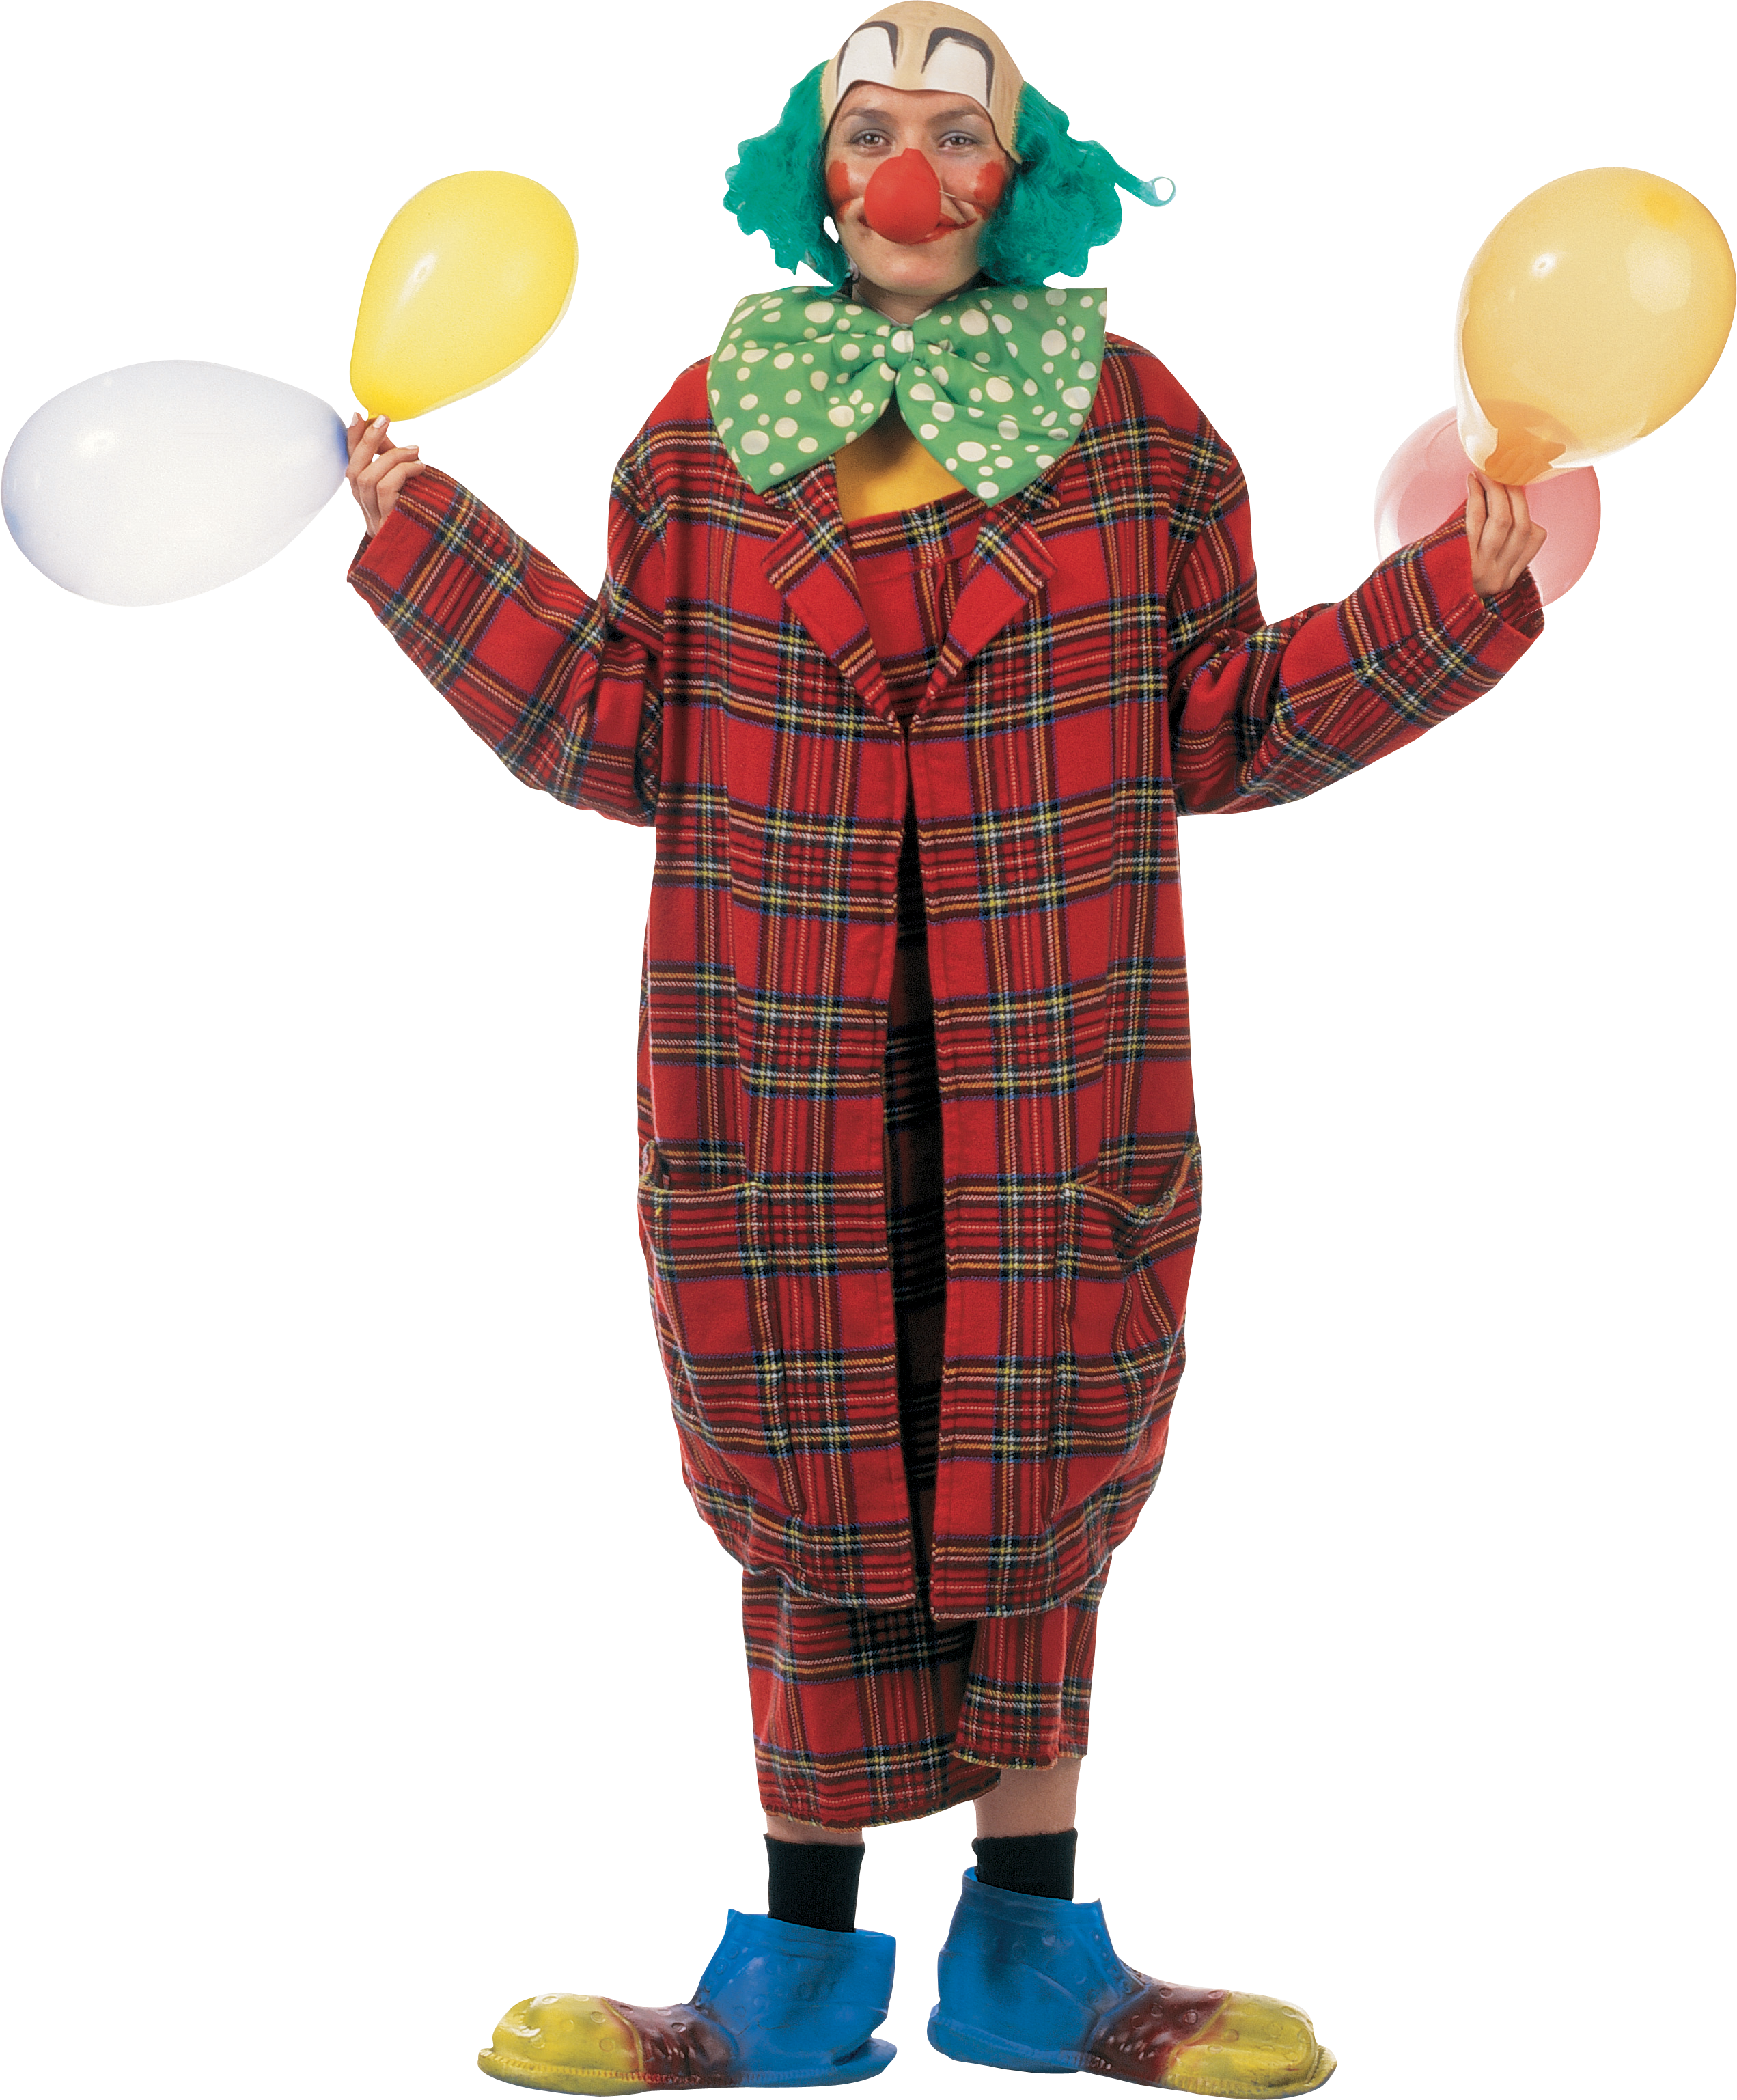 Clown - Clown (2543x3074)